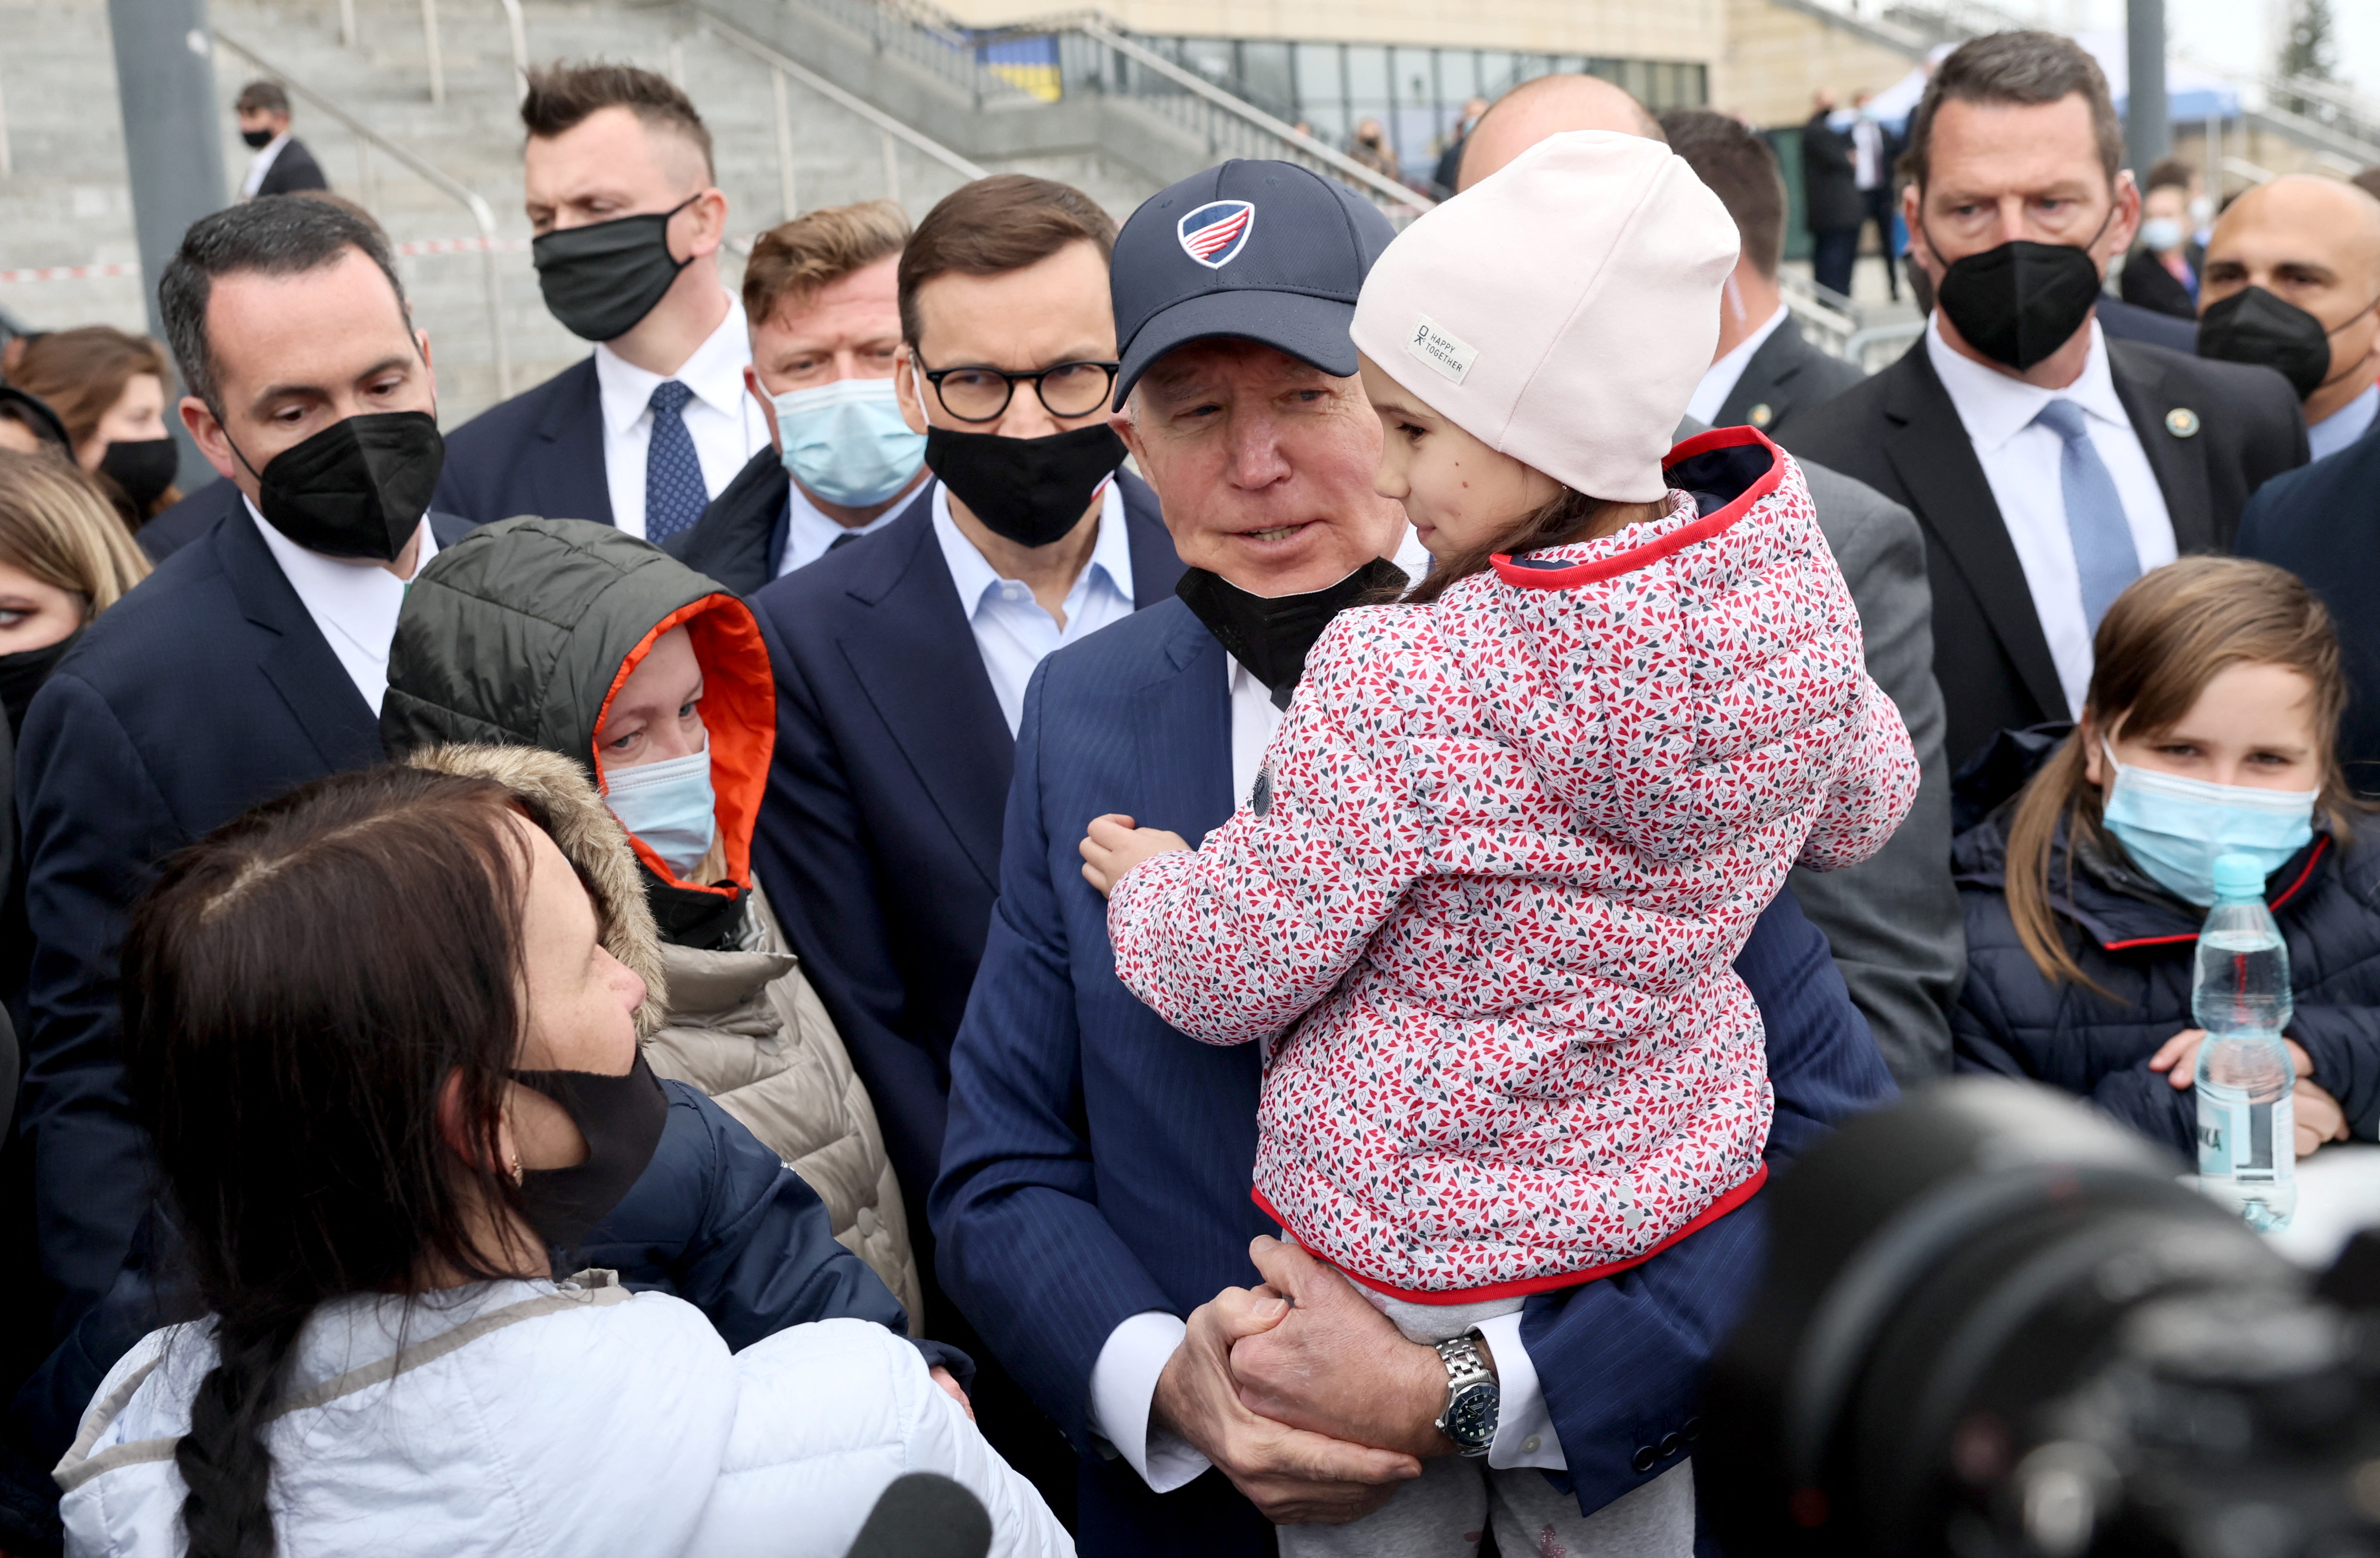 Joe Biden holds sostiene una niña ucraniana durante su visita al Estadio Nacional PGE, en Varsovia, Polonia (REUTERS/Evelyn Hockstein)